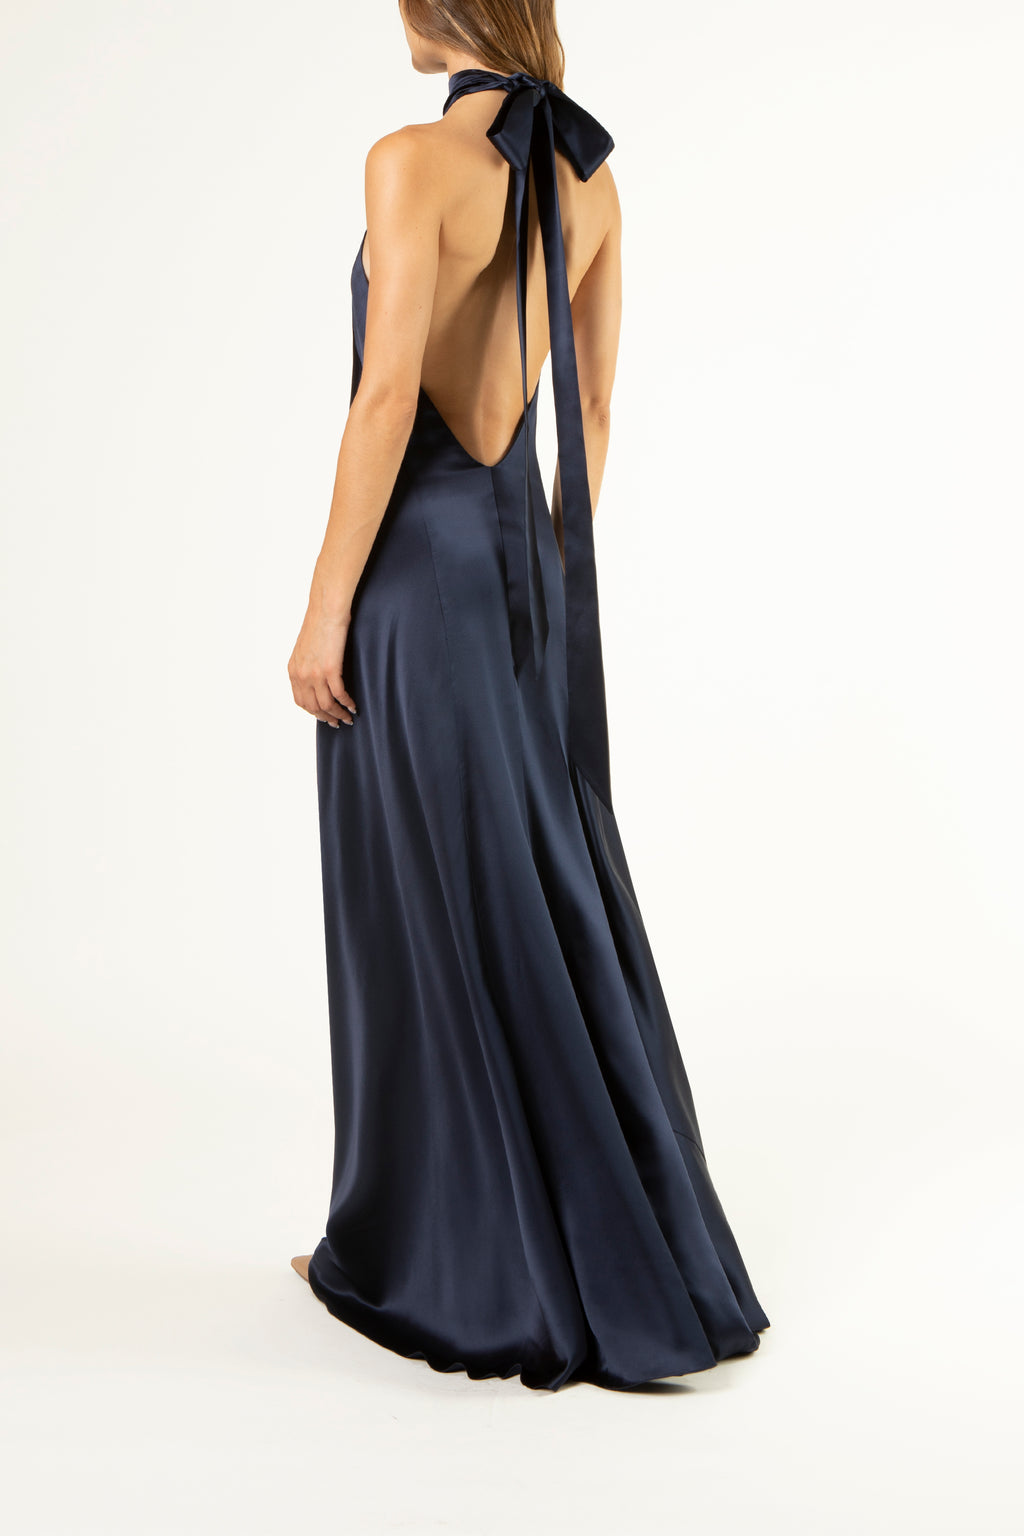 Halter tie neck backless gown - midnight – Michelle Mason